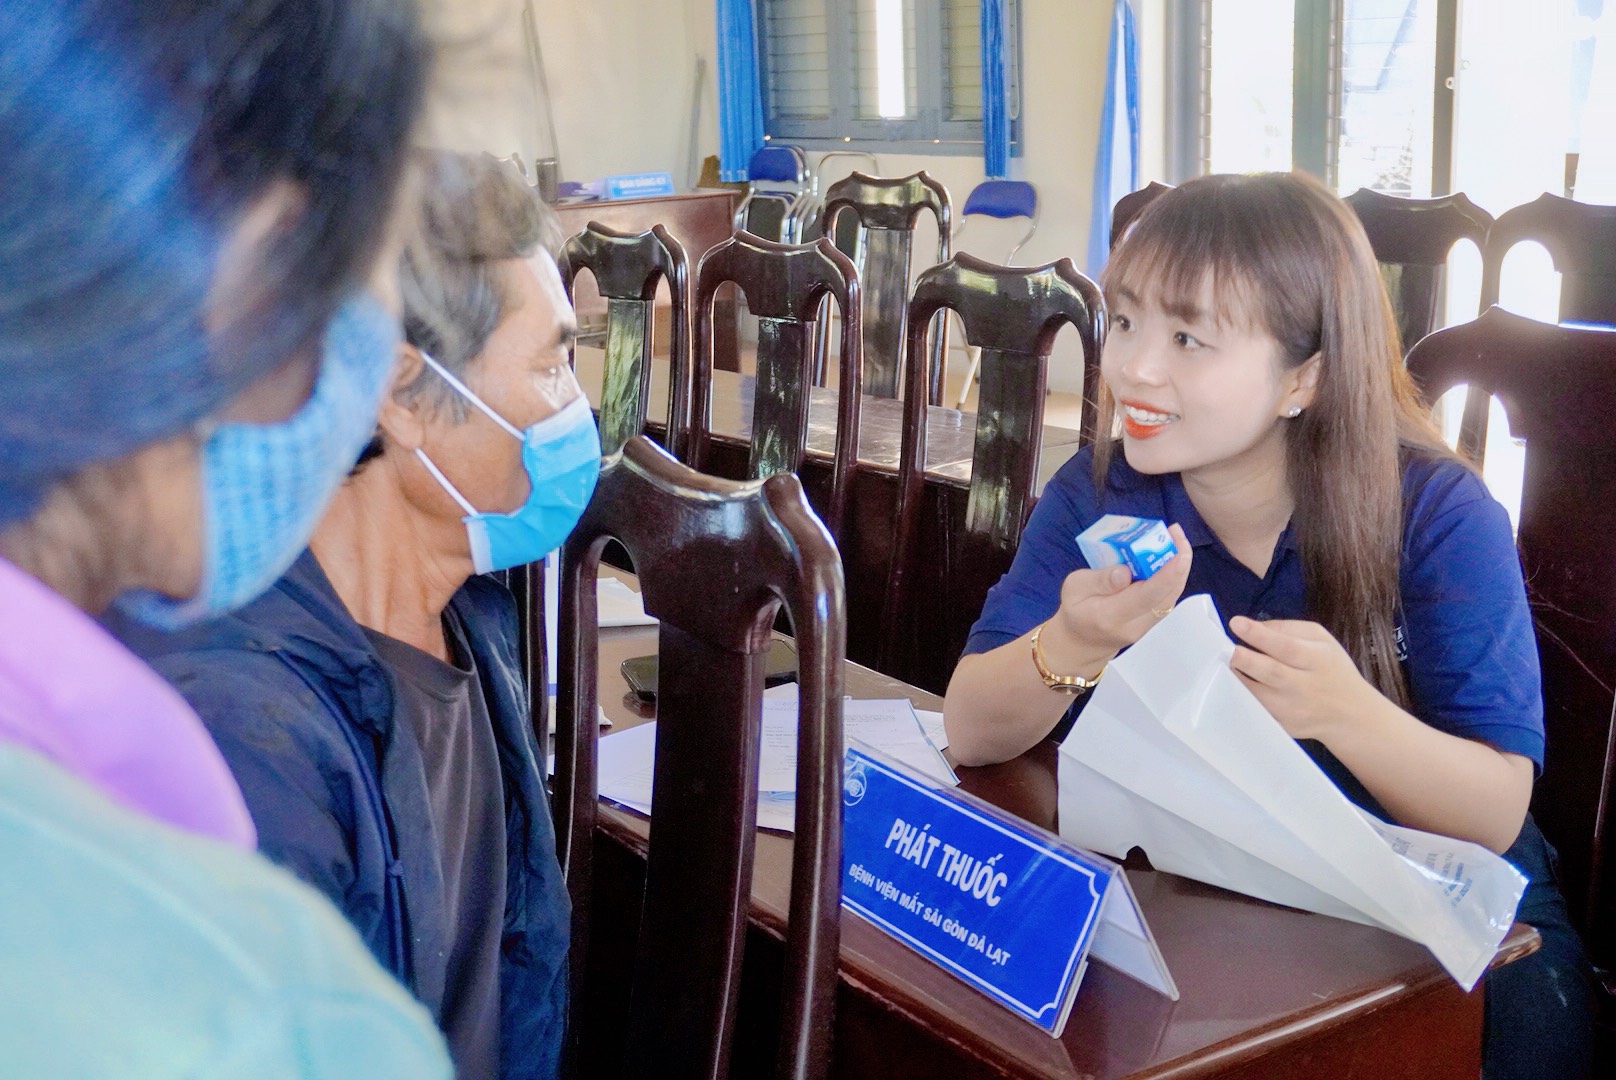 Sau khi khám, Bệnh viện Mắt Sài Gòn – Đà Lạt sẽ tư vấn, cấp phát thuốc miễn phí cho người dân